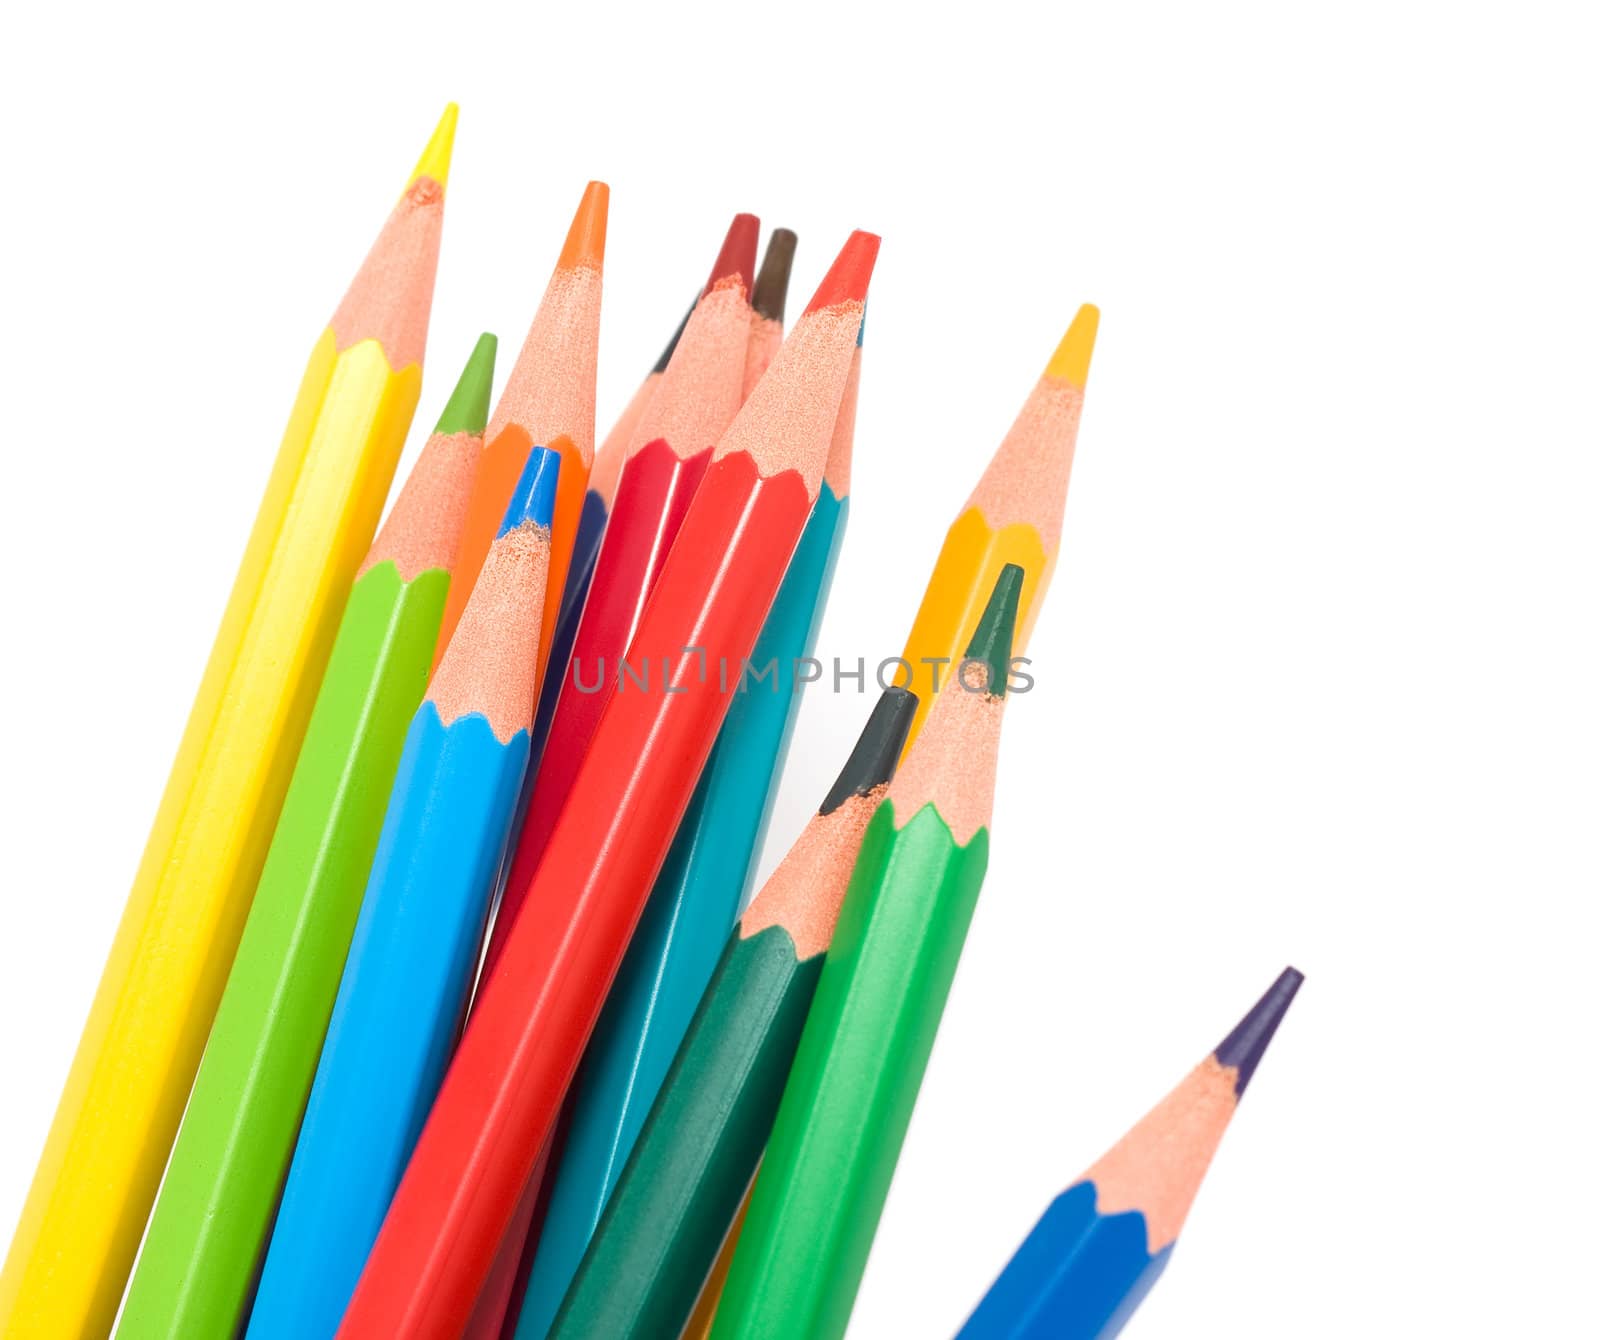 Color pencils by Bedolaga